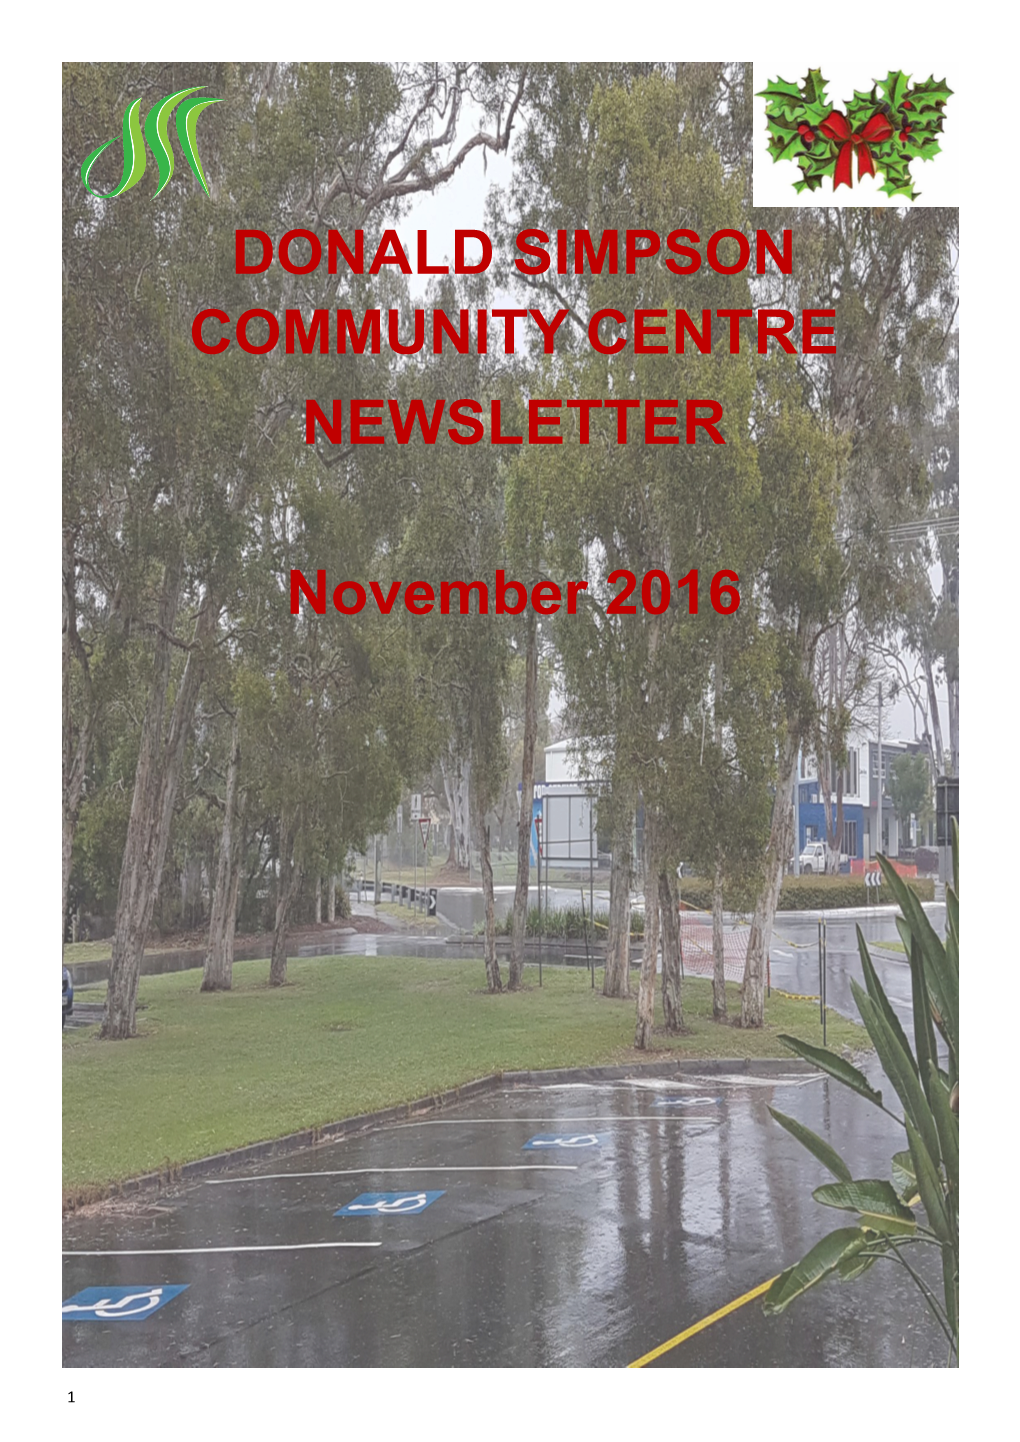 DONALD SIMPSON COMMUNITY CENTRE NEWSLETTER November